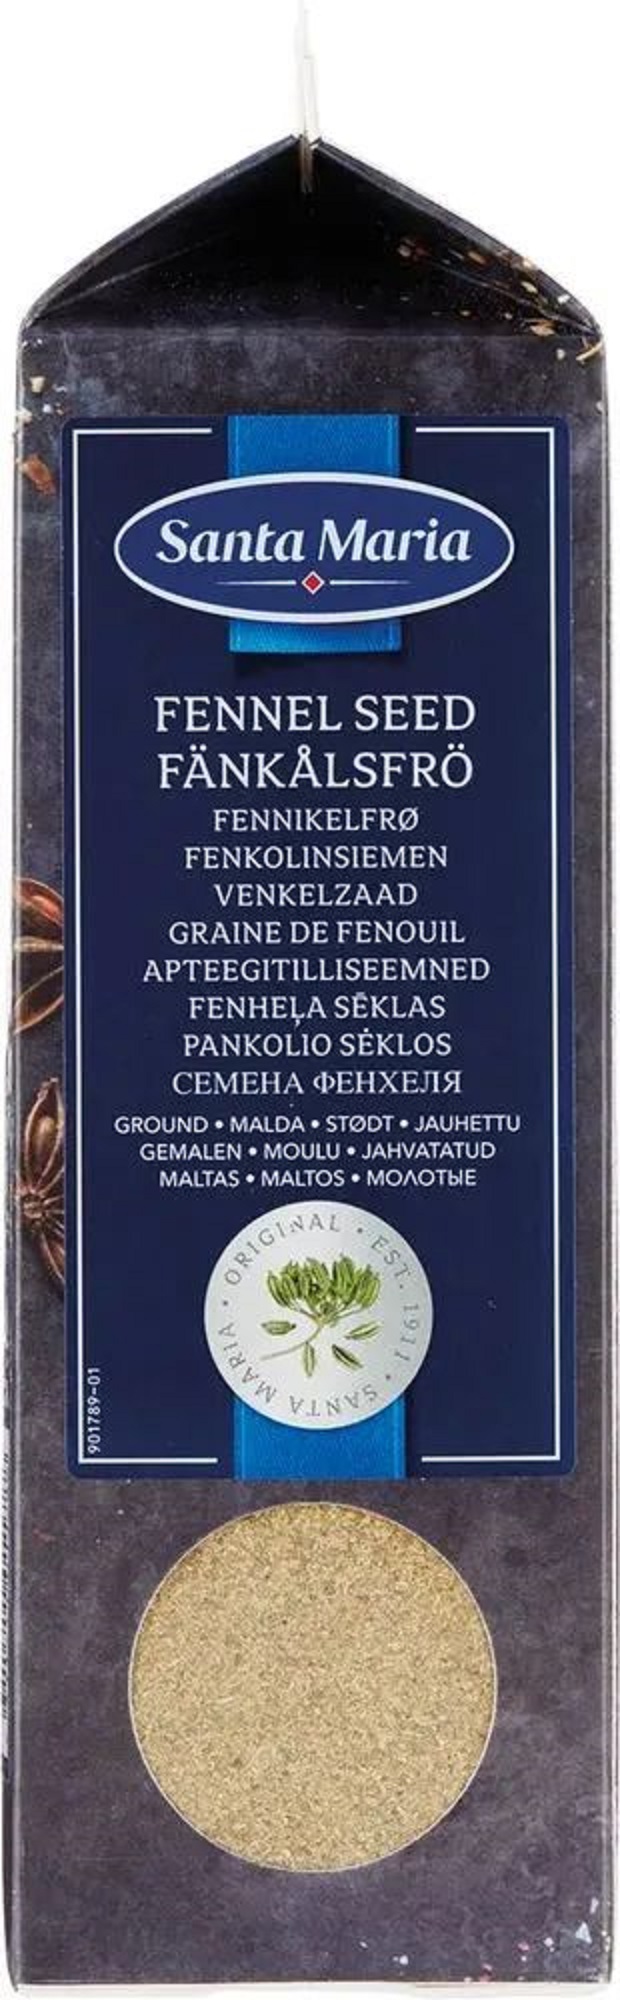 Семена фенхеля Santa Maria Fenhel Seed молотые, 350 г